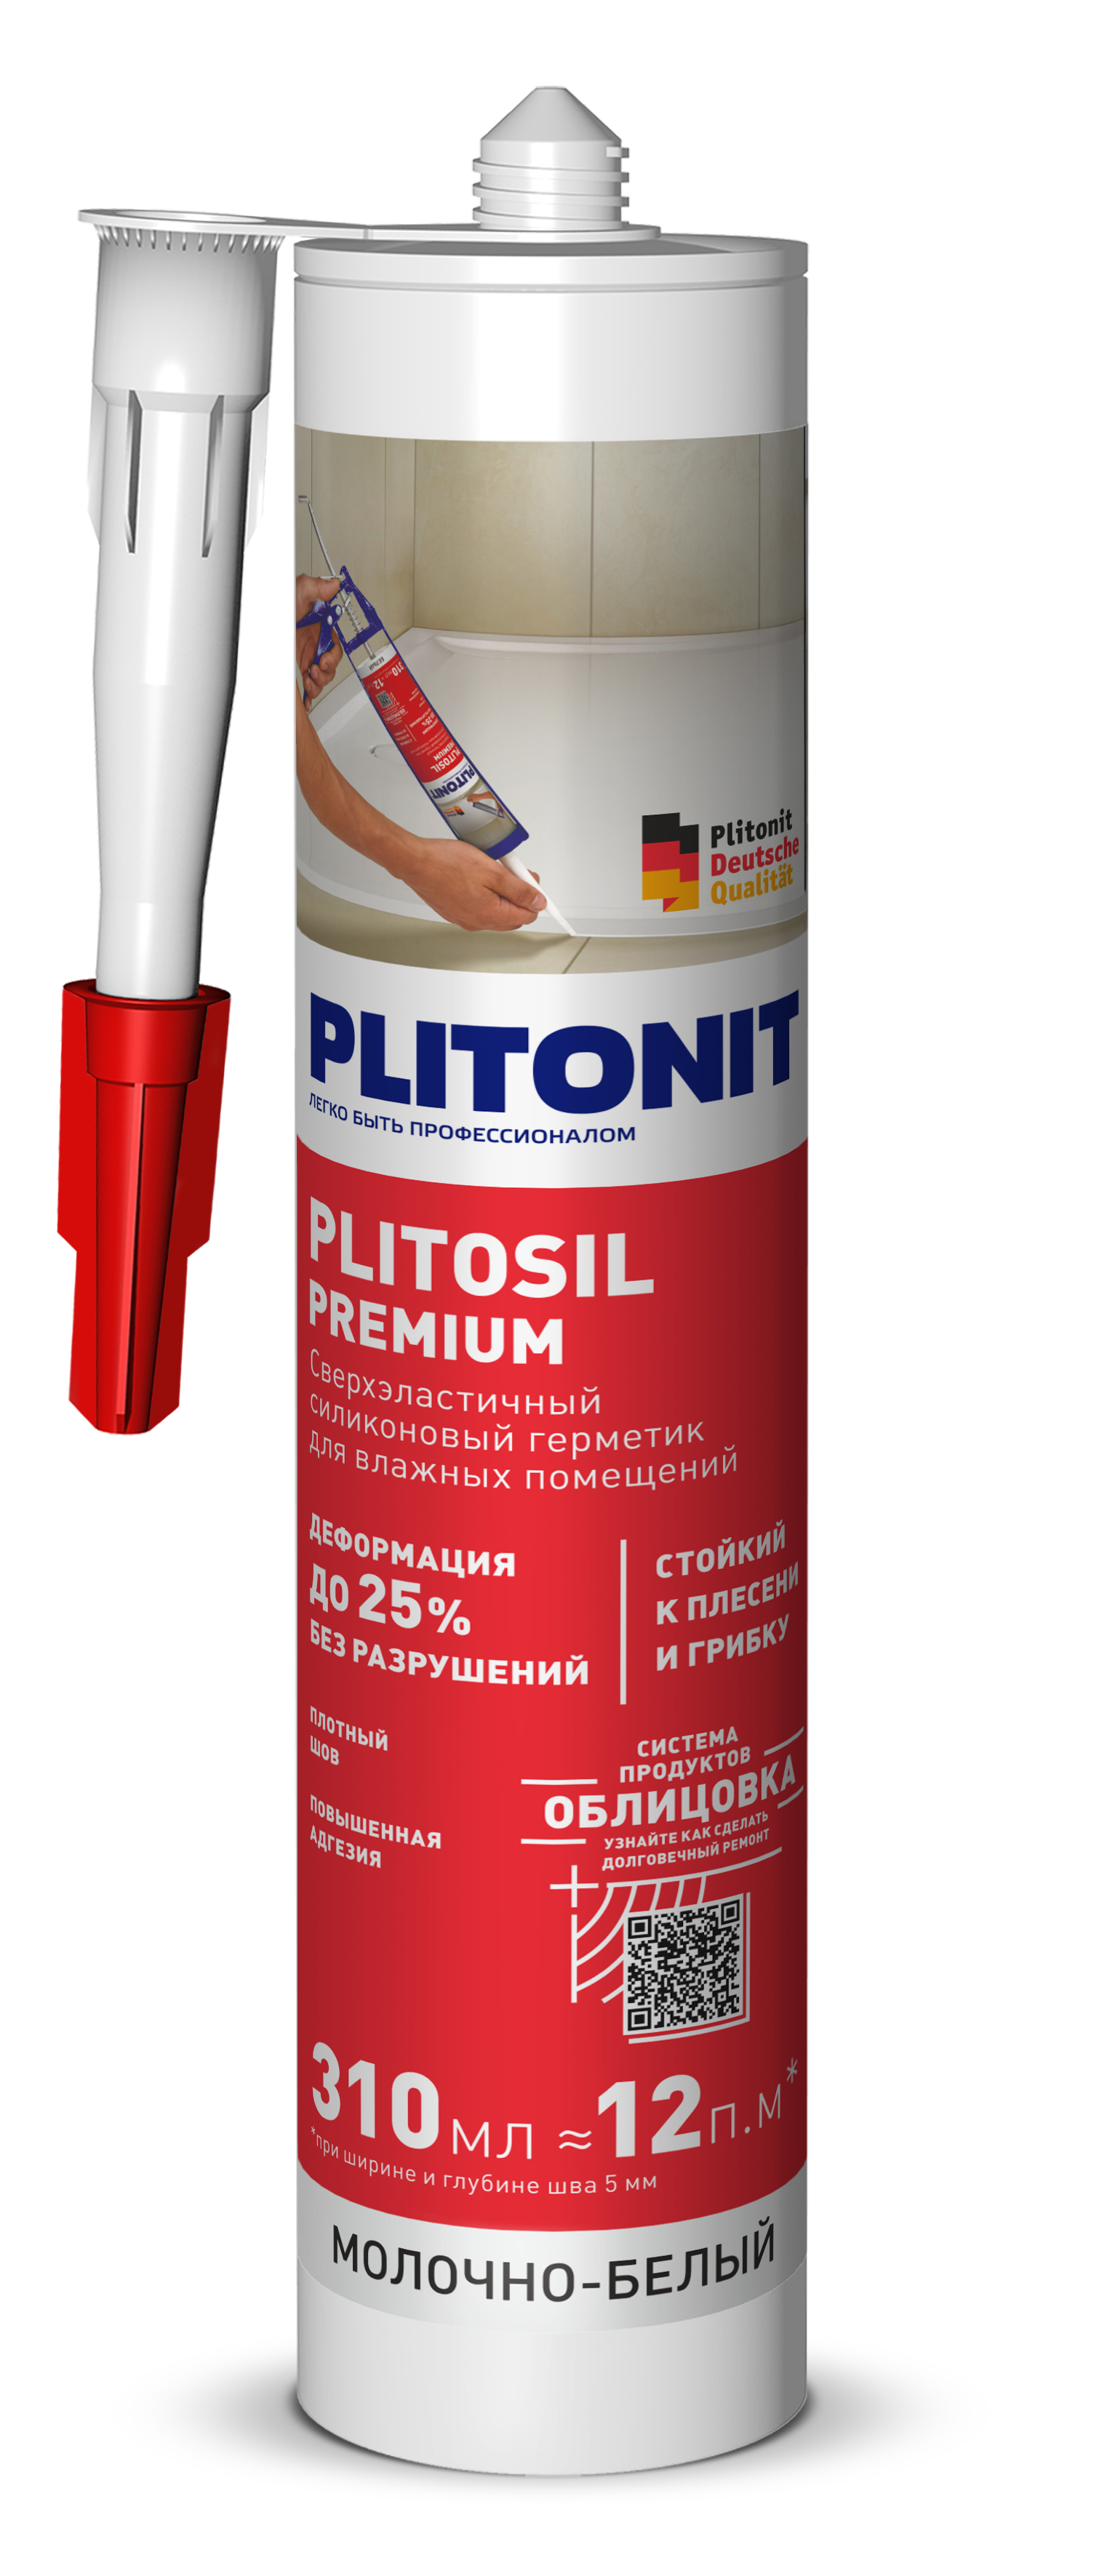 PLITONIT PlitoSil Premium Герметик сверхэластичный силиконовый для влажных помещений, молочно-белый 310 мл